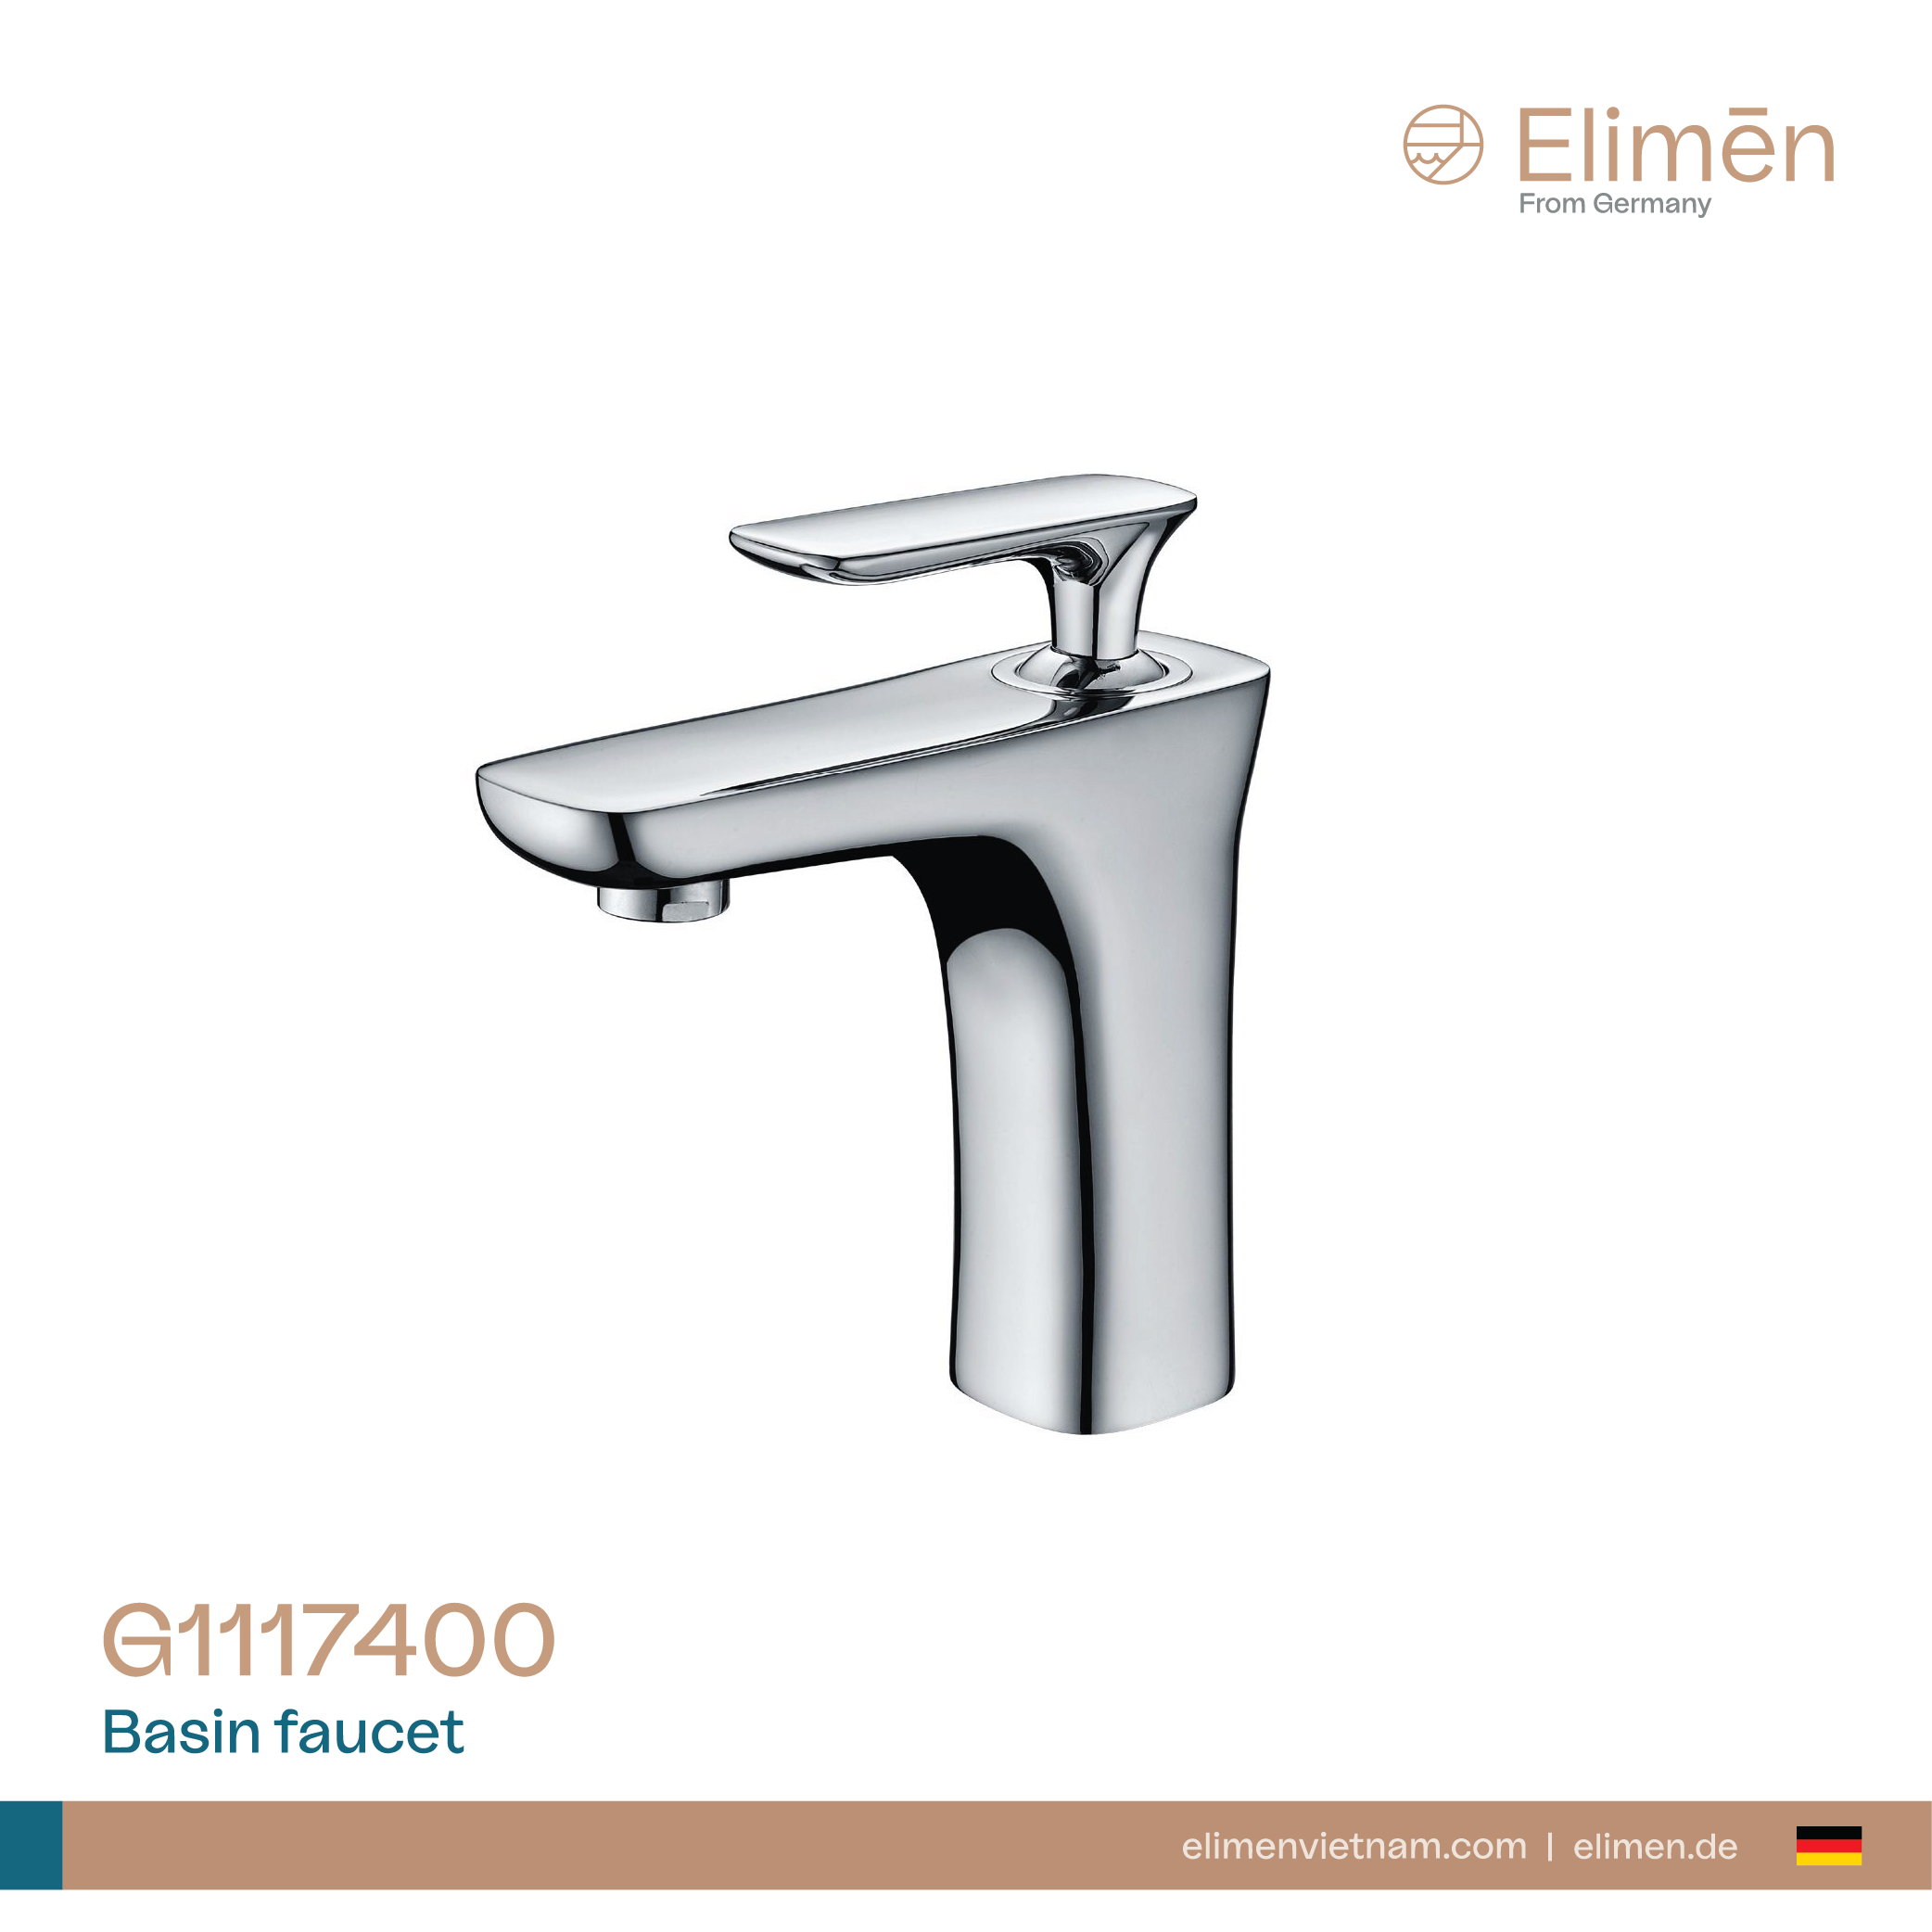 Elimen basin faucet - Code G1117400